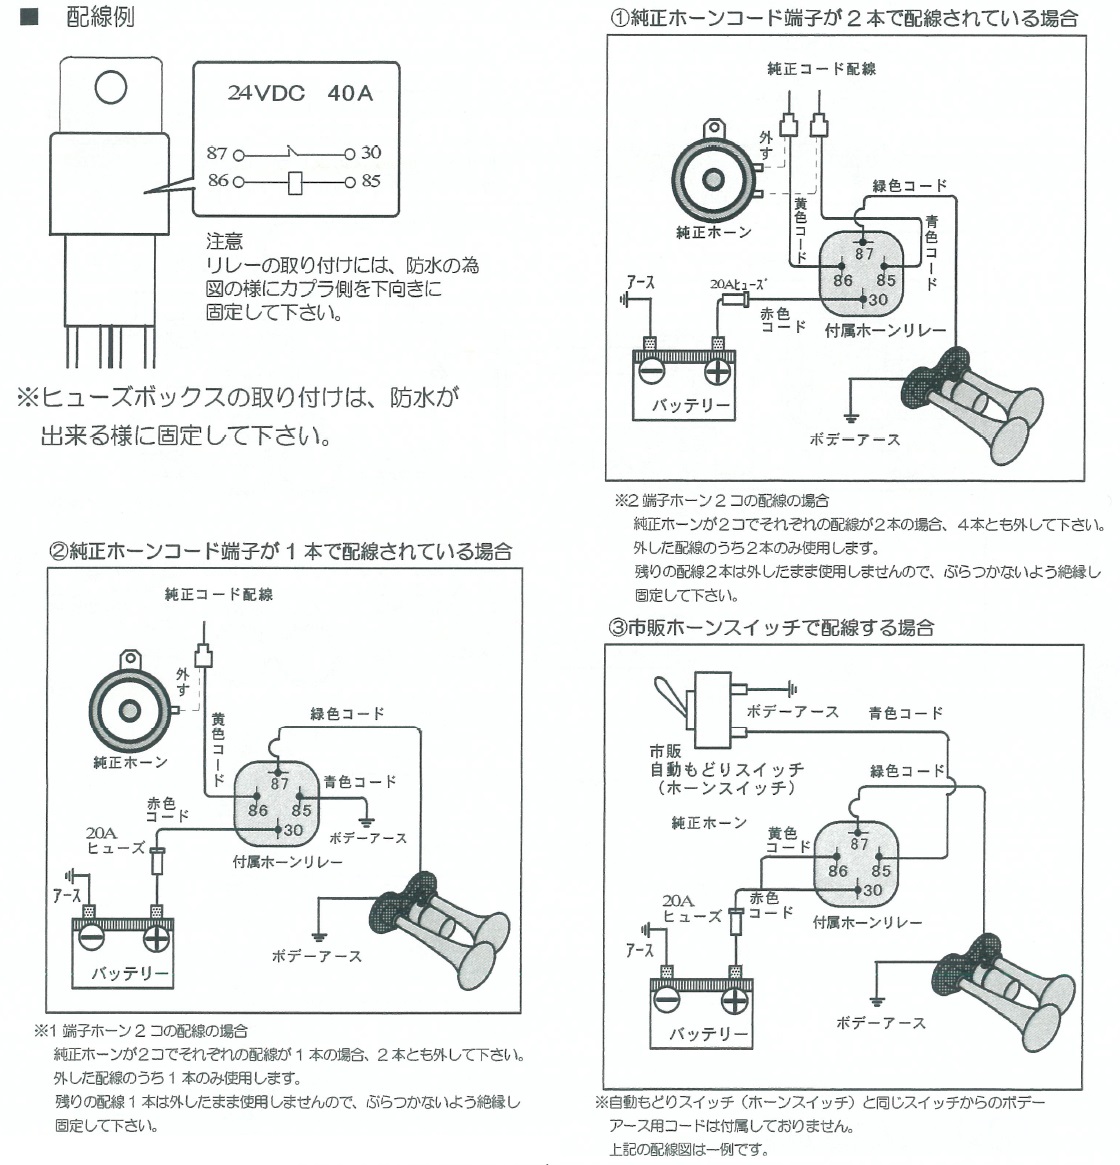 NIK-124A ホーンリレーキット 24V｜製品情報｜日本ボデーパーツ工業株式会社